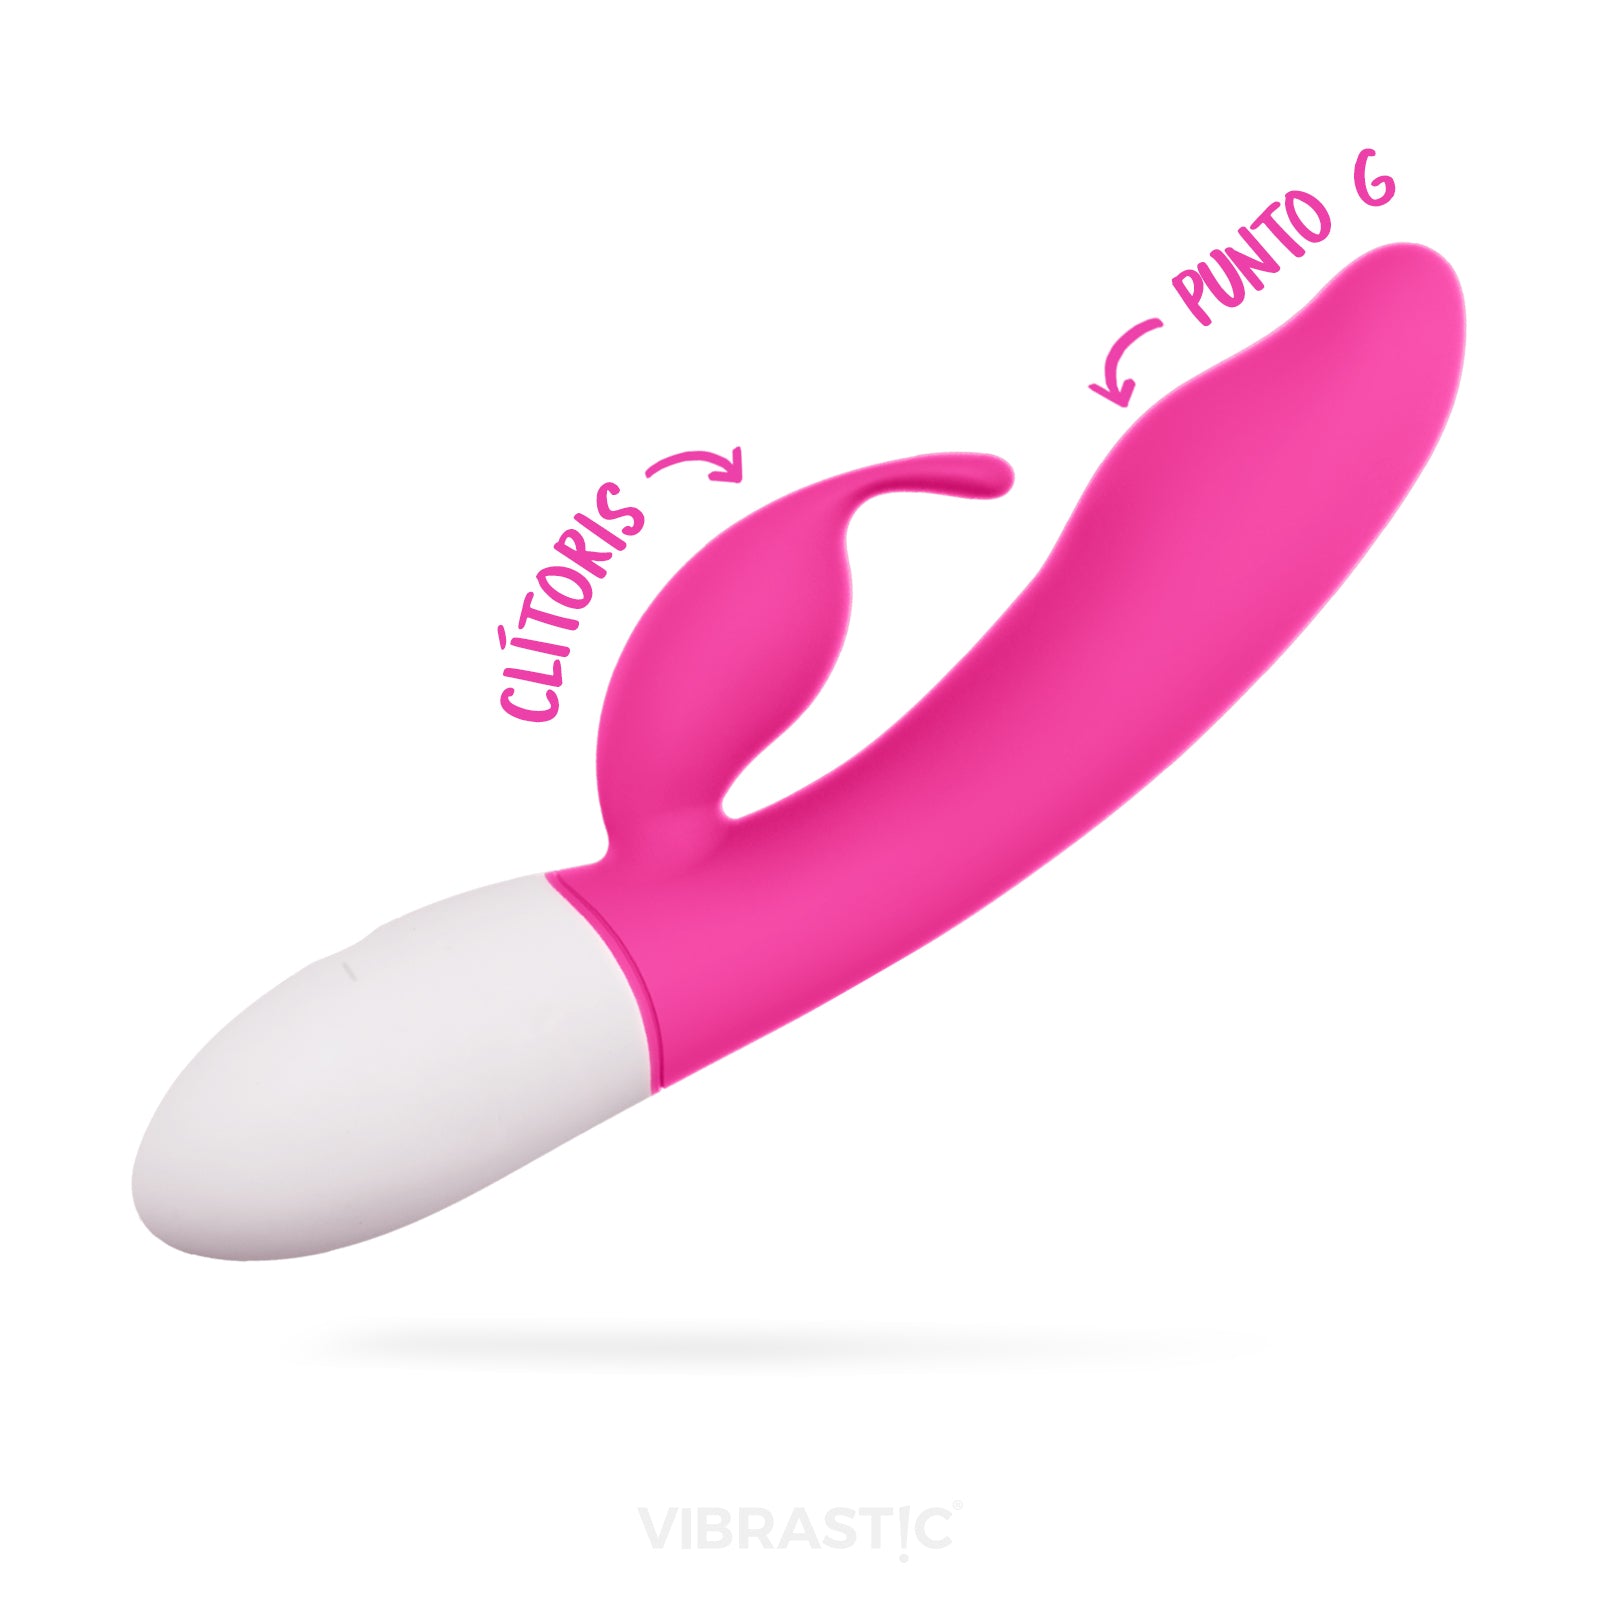 Intensifica tus orgasmos con PÄL, el vibrador conejo ergonómico con múltiples niveles de vibración